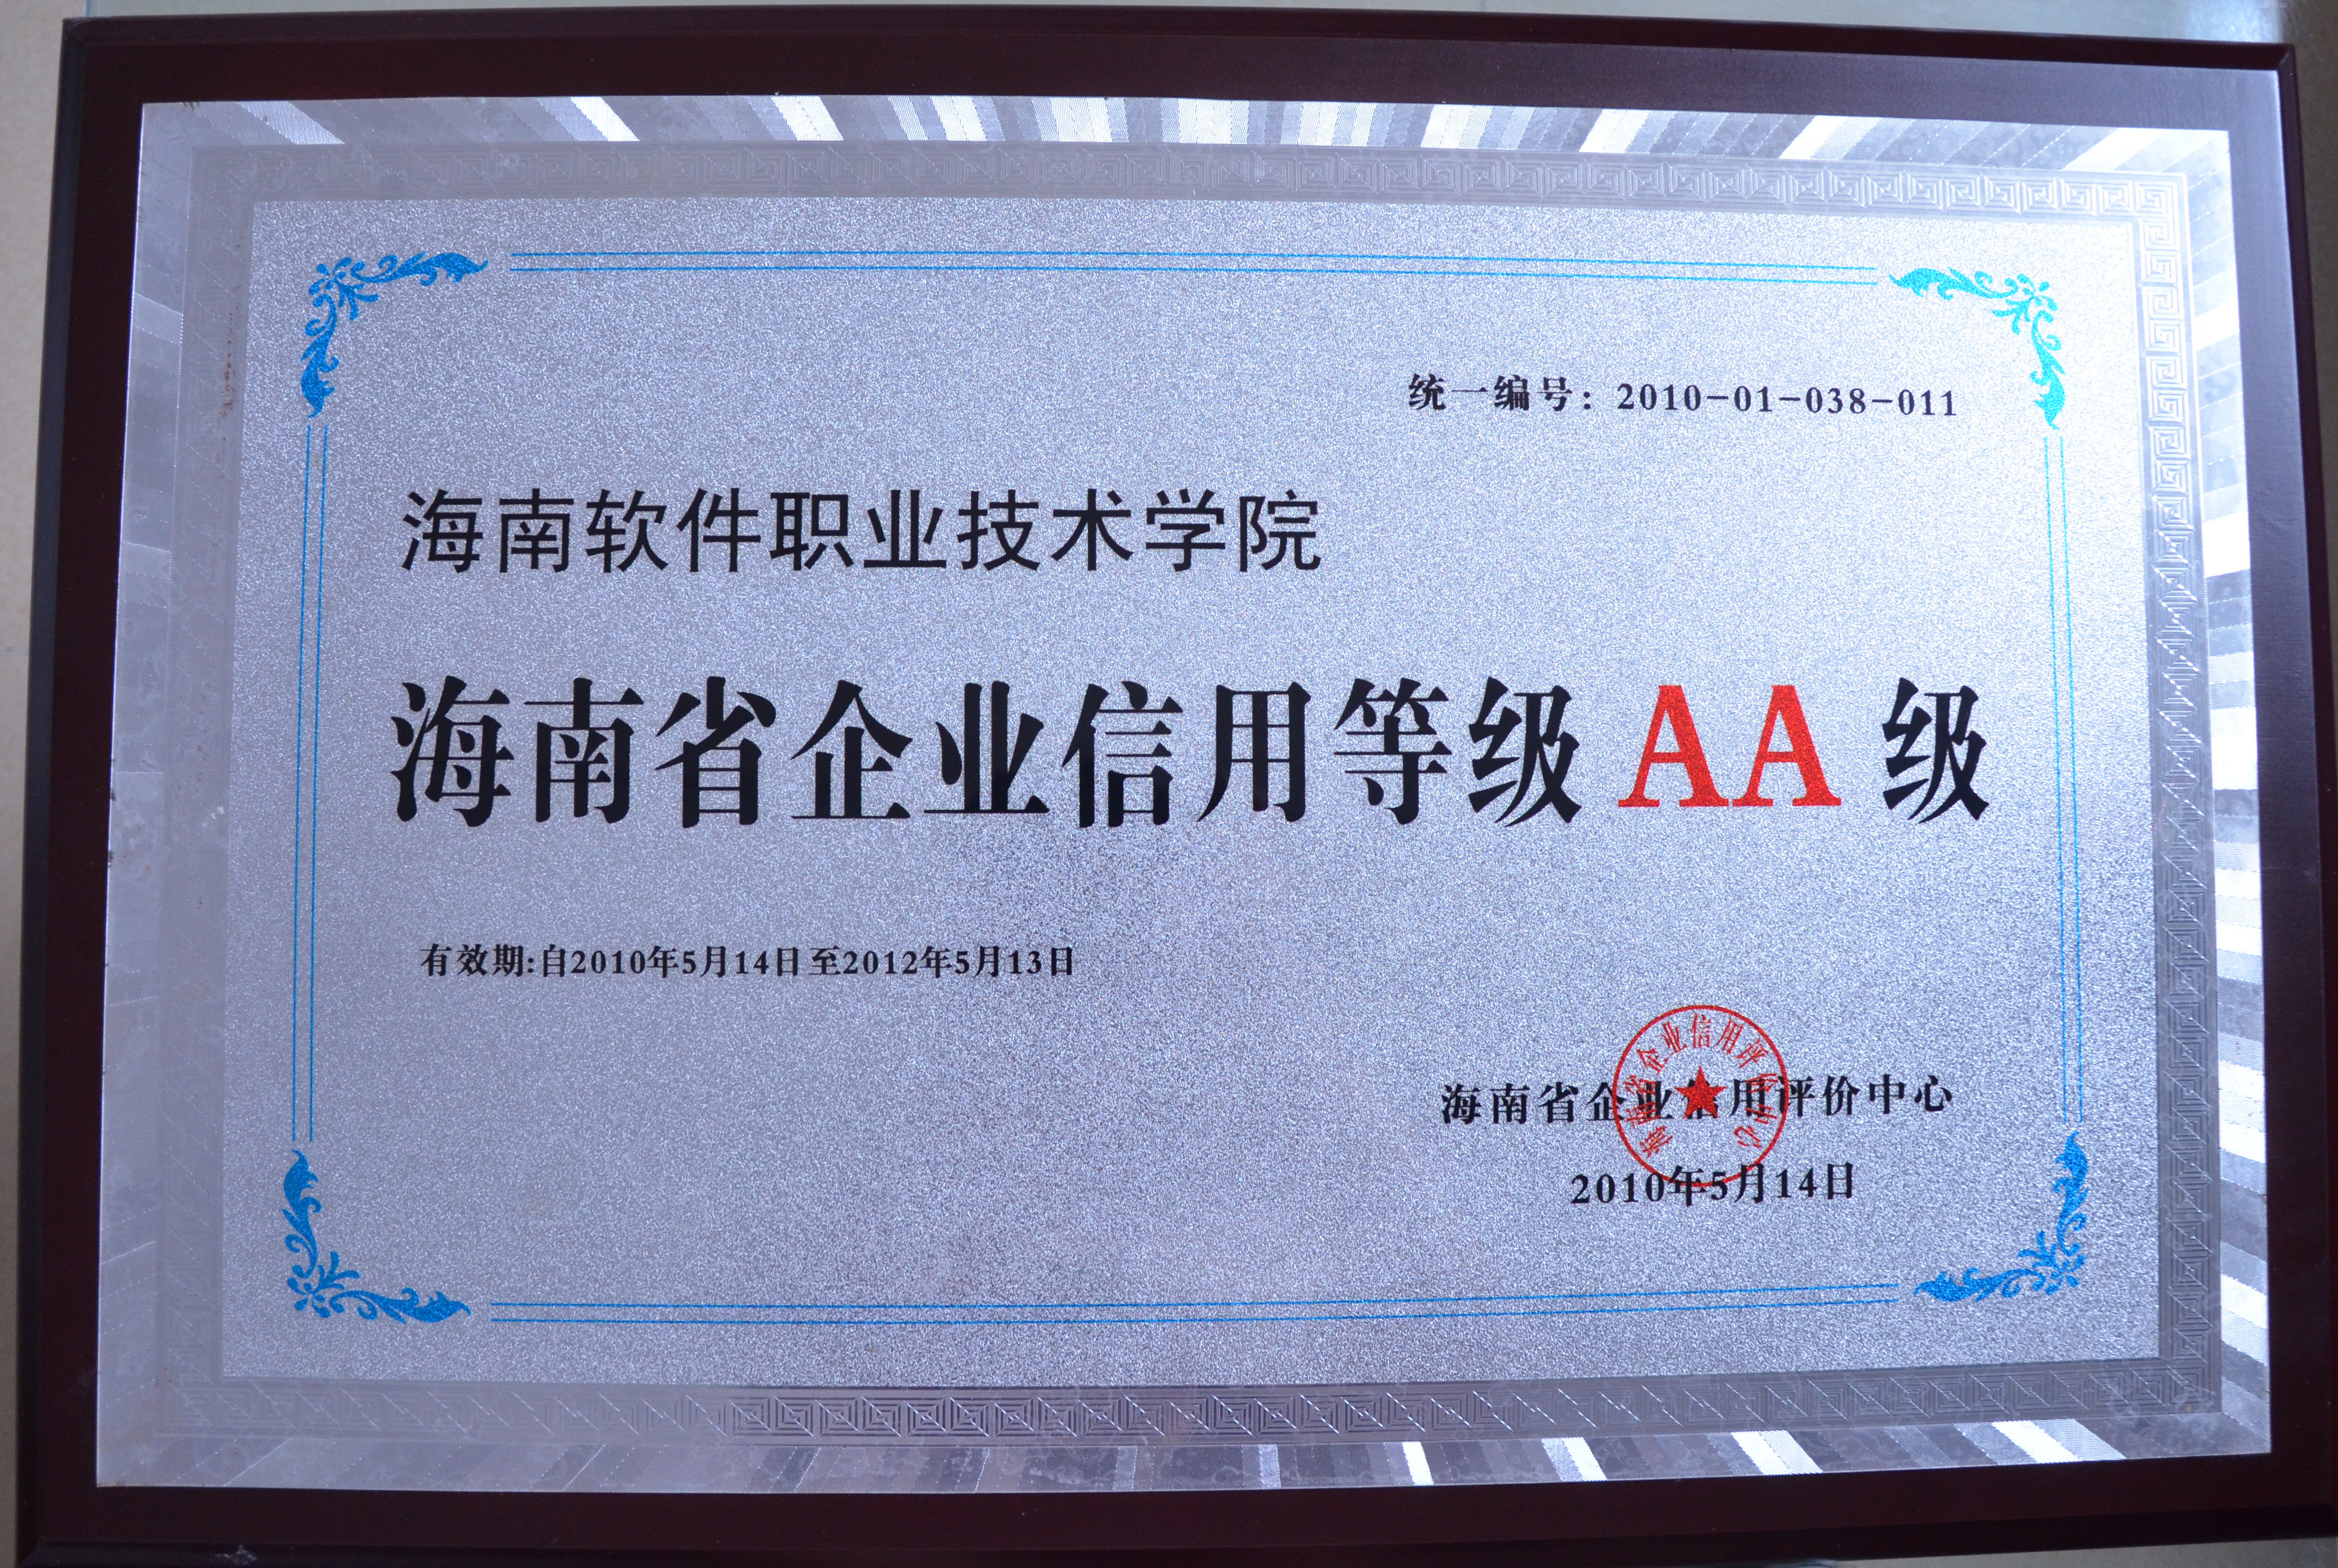 我院被授予“海南省企业信用等级AA级”